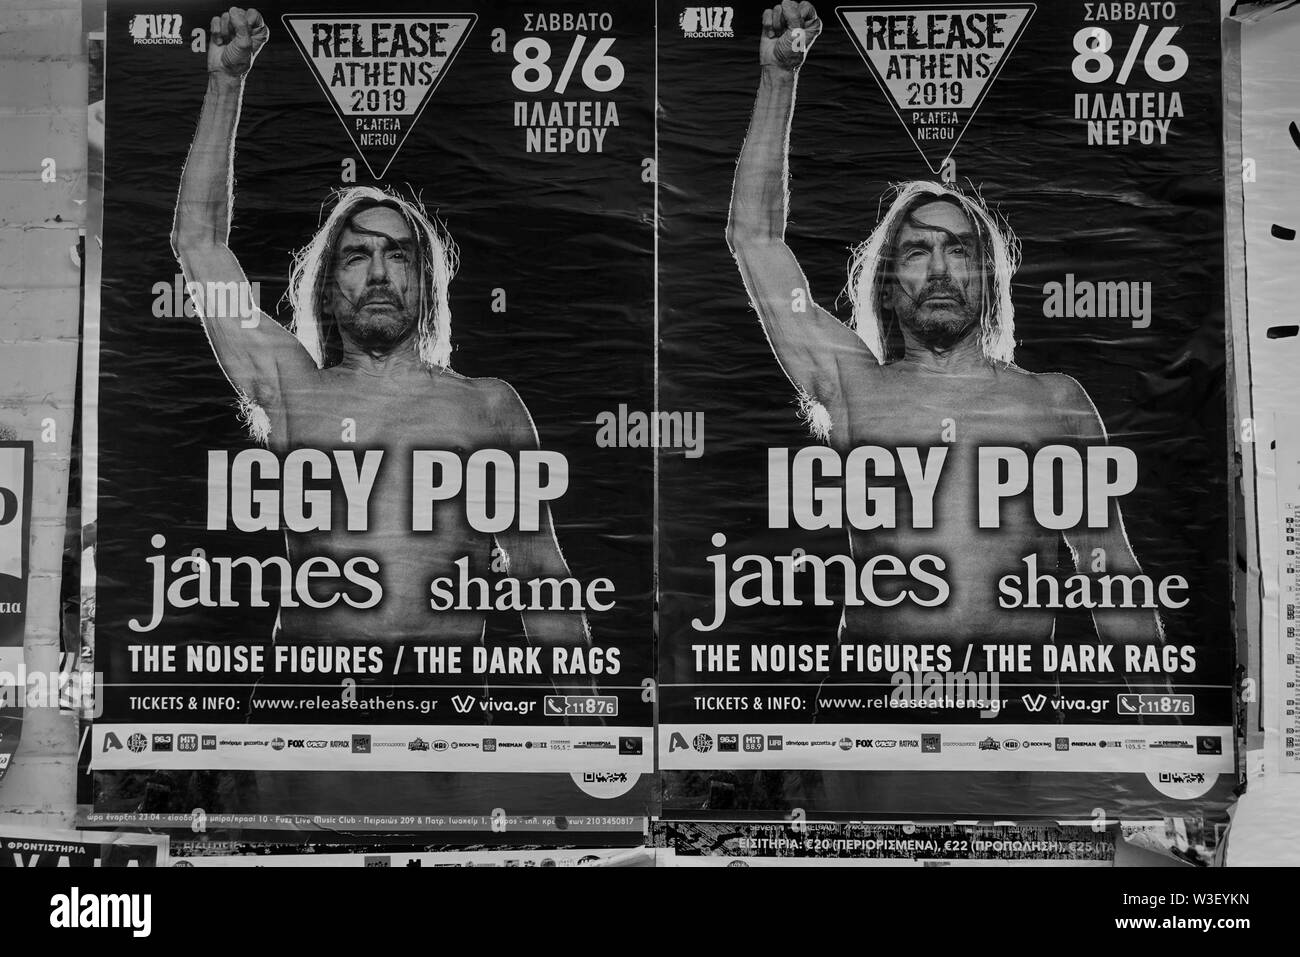 Athen, Griechenland - 20. MAI 2019: Wand mit Iggy Pop Rock Konzert Poster. Schwarz und Weiß. Stockfoto